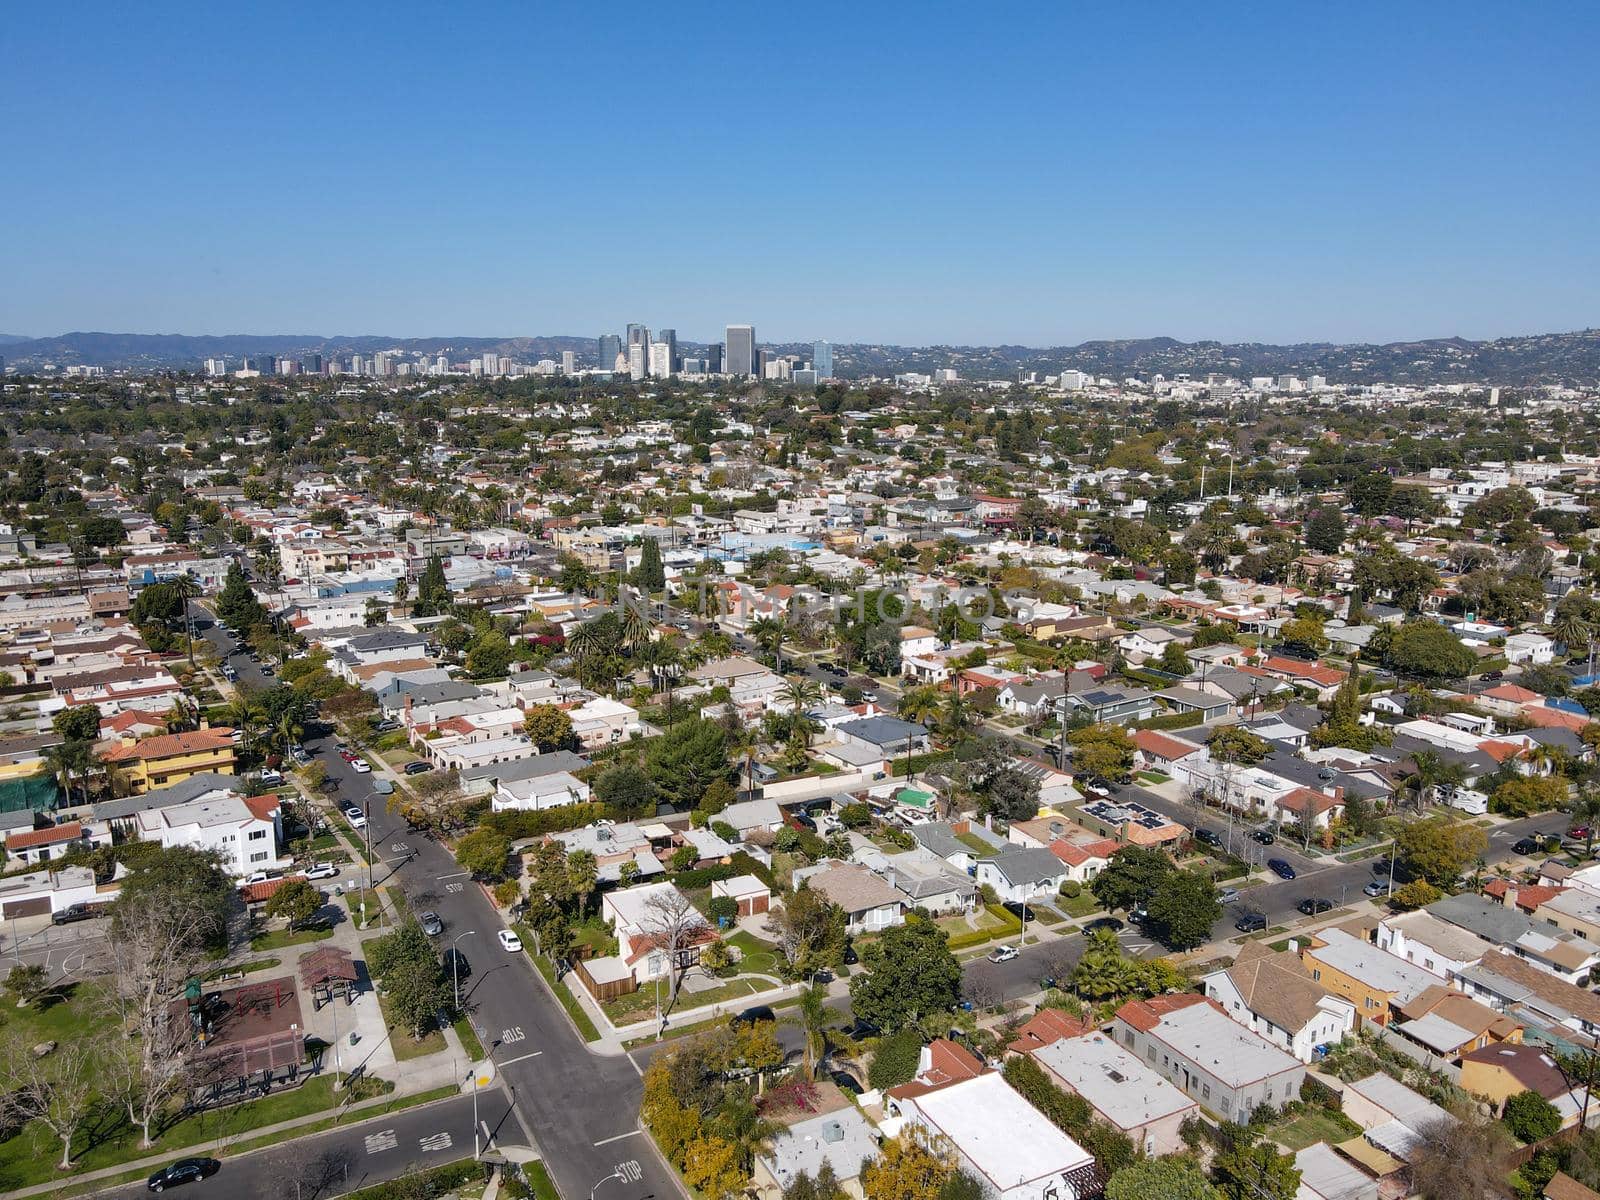 Aerial view above Reynier Village neighborhood in West Los Angeles by Bonandbon